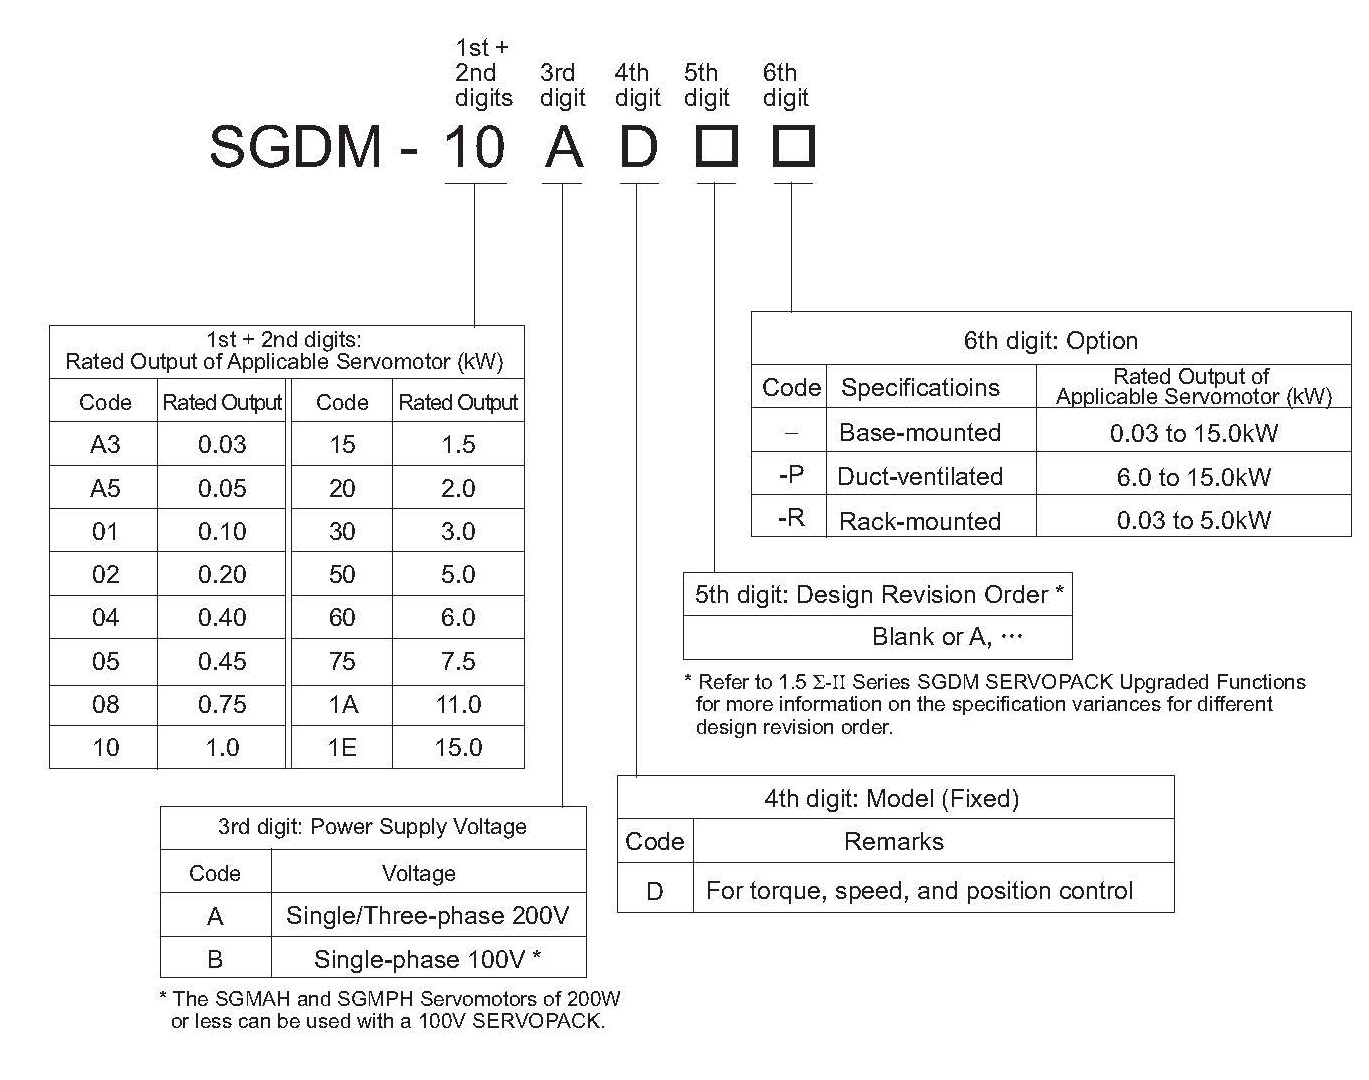 SGDM-02AD spec